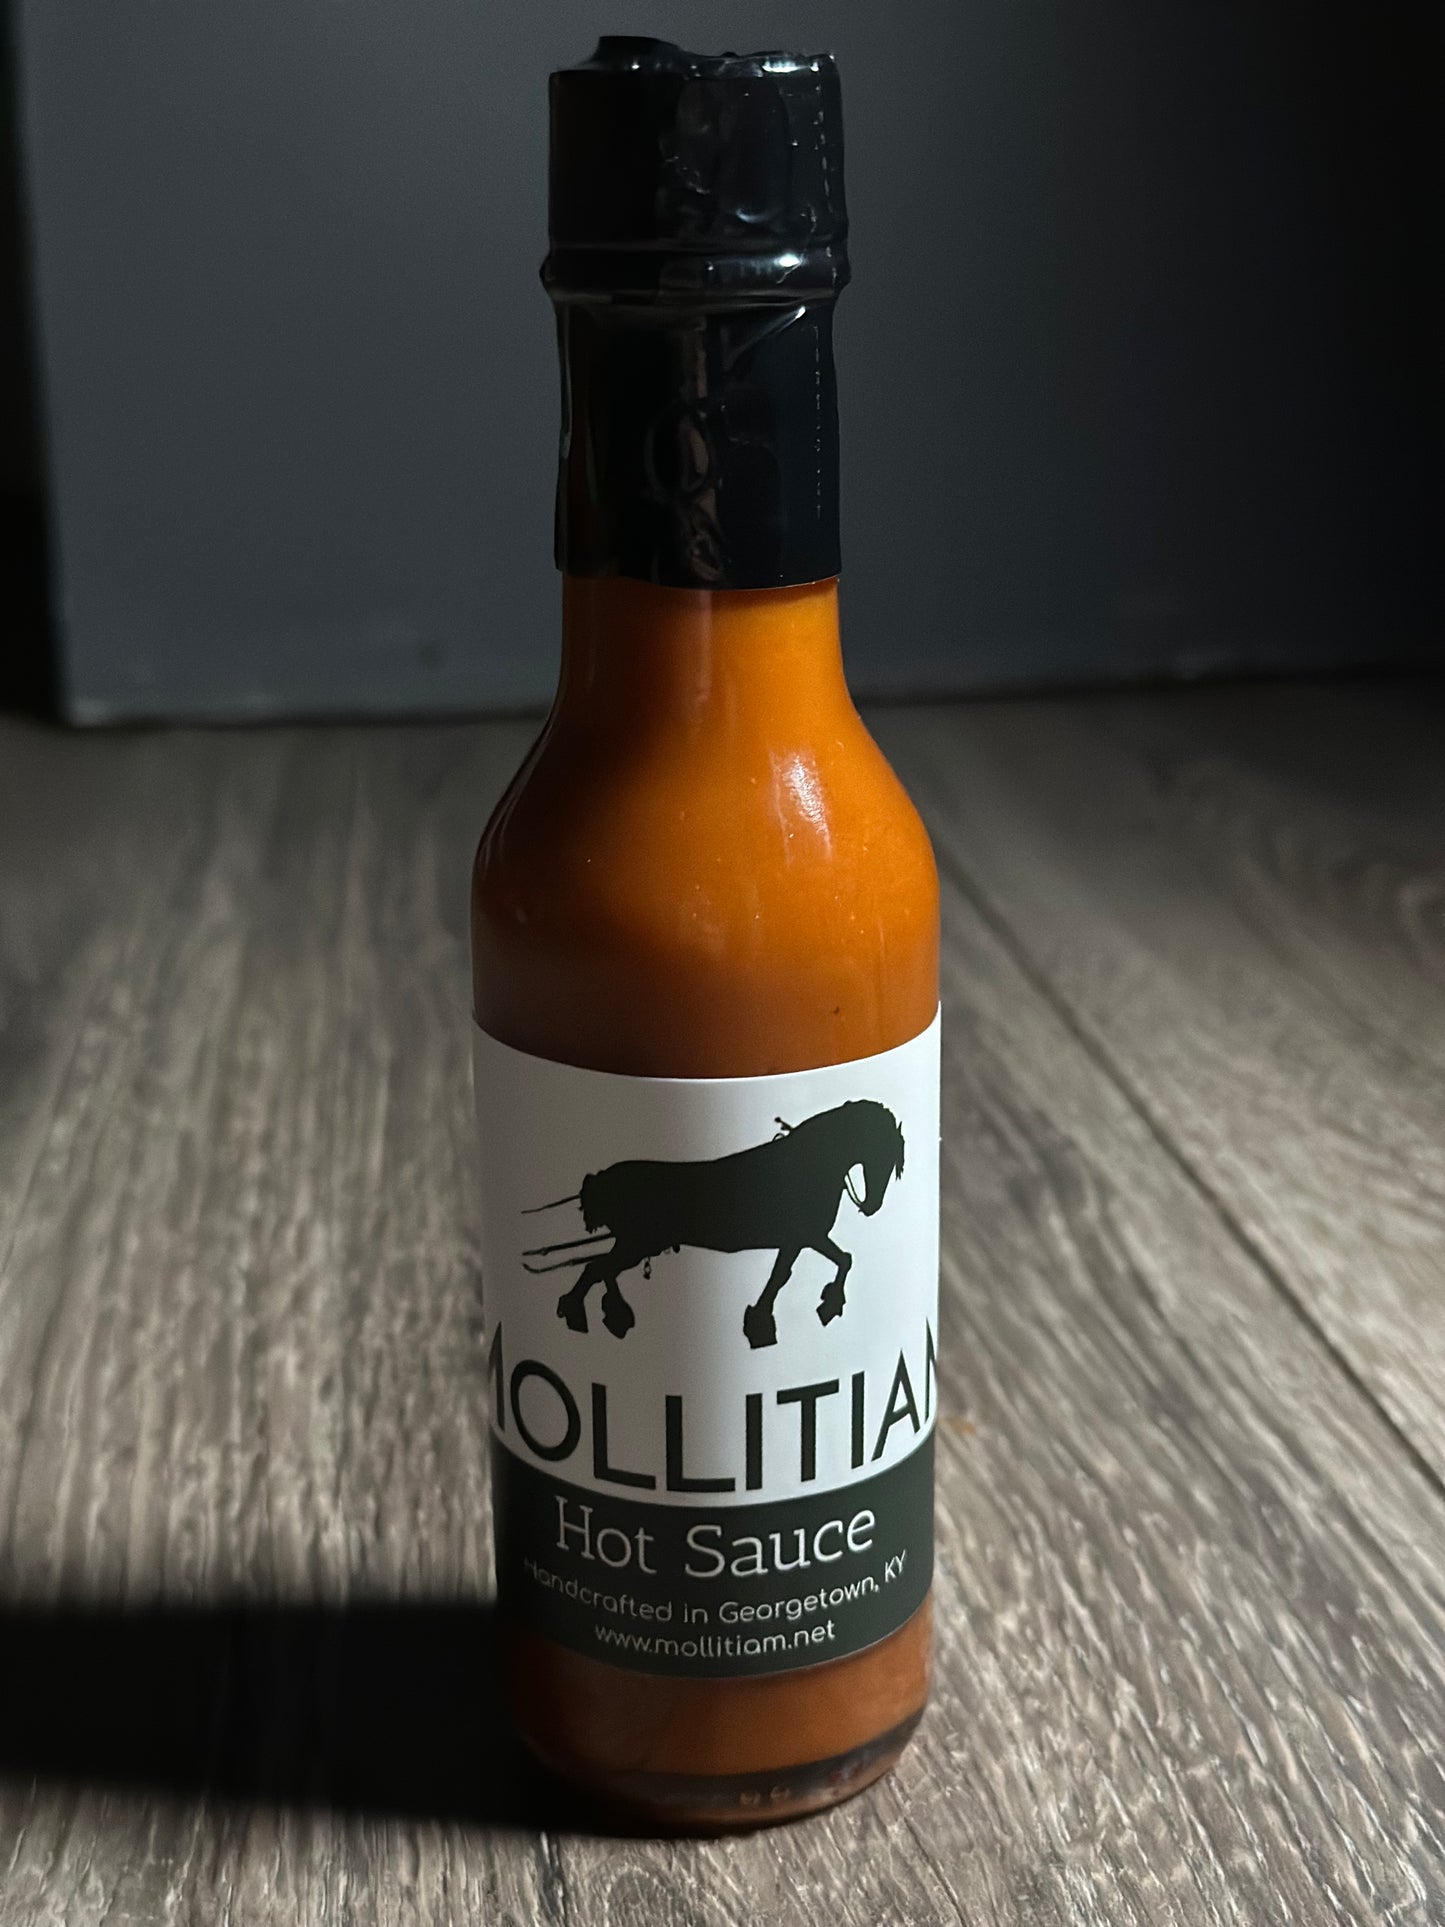 Mollitiam Hot Sauce